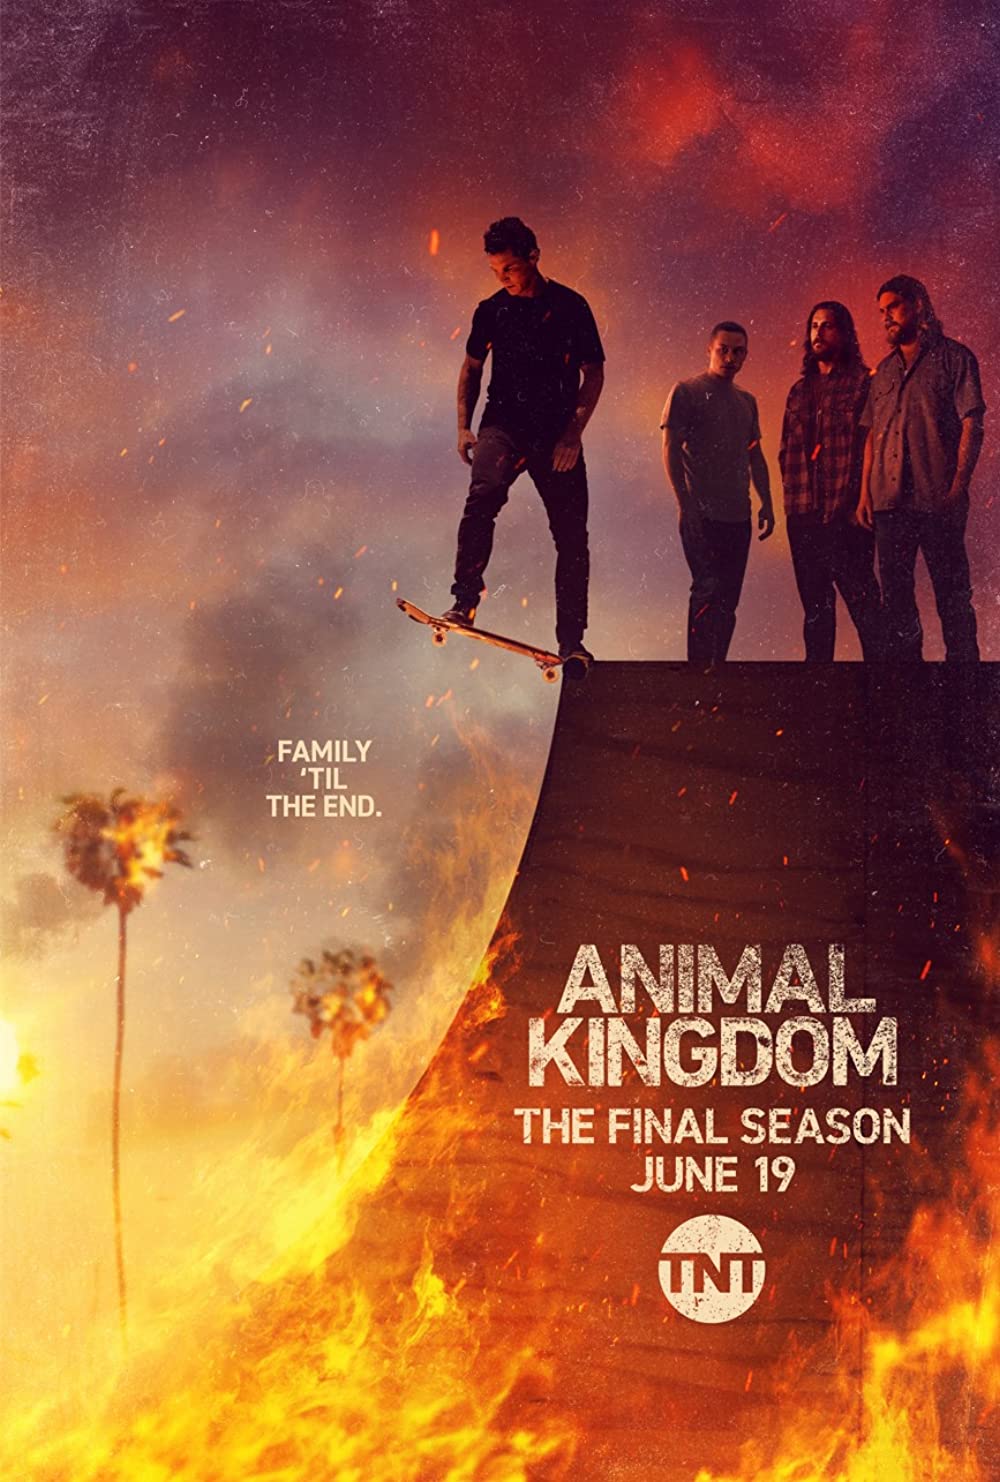 ดูหนังออนไลน์ฟรี Animal Kingdom Season 1 EP.8 แอนนิเมิล คิงด้อม ซีซั่น 1 ตอนที่ 8 (ซับไทย)